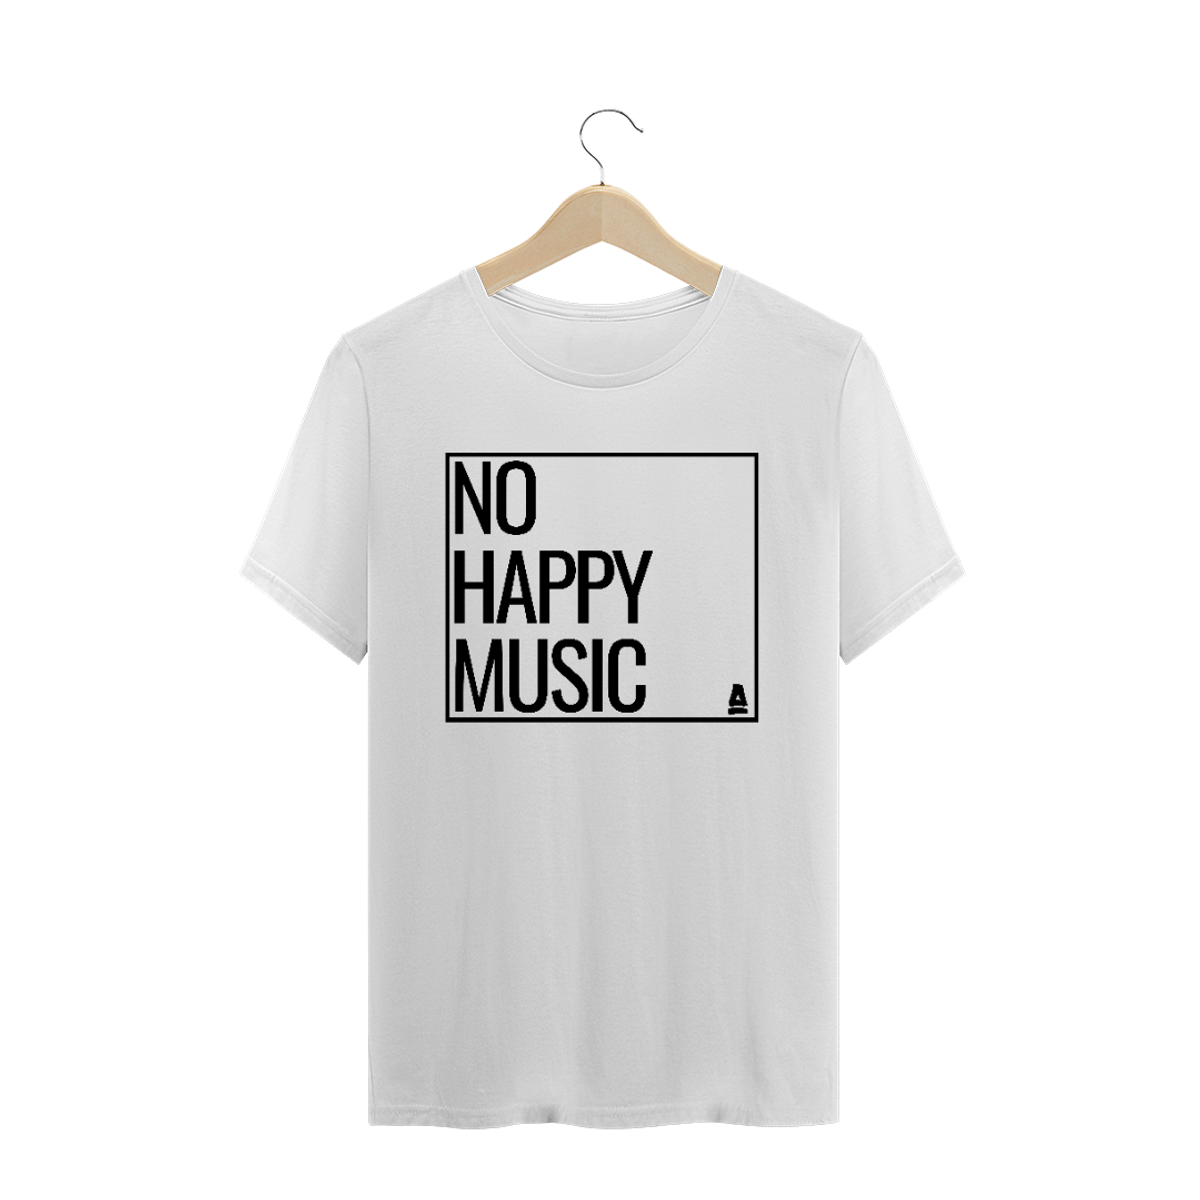 Nome do produto: No happy music